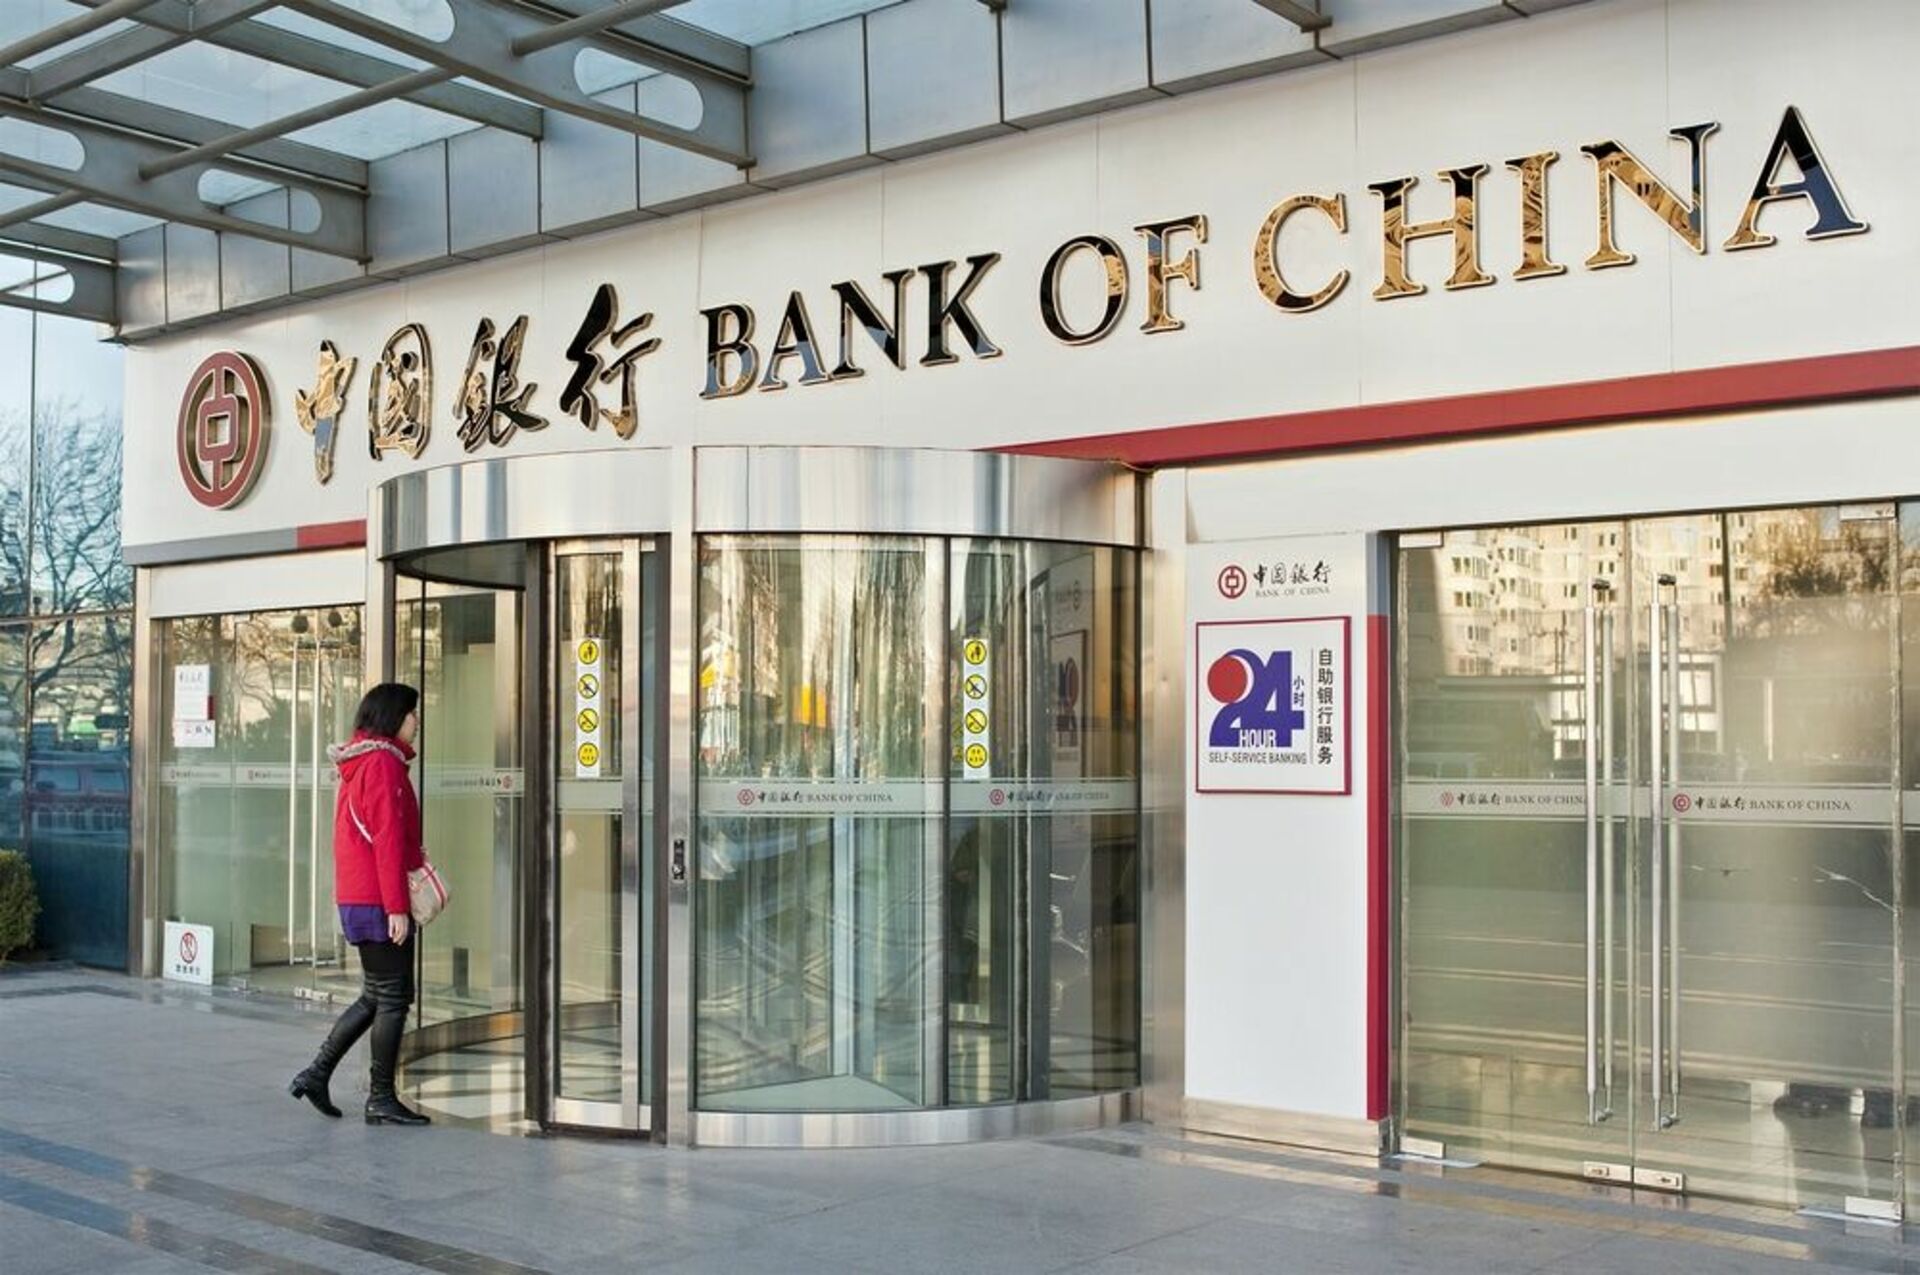 Бэнк оф сайт. Банк Китая. Банк Bank of China. Банк Китая (boc). Bank of China в России.